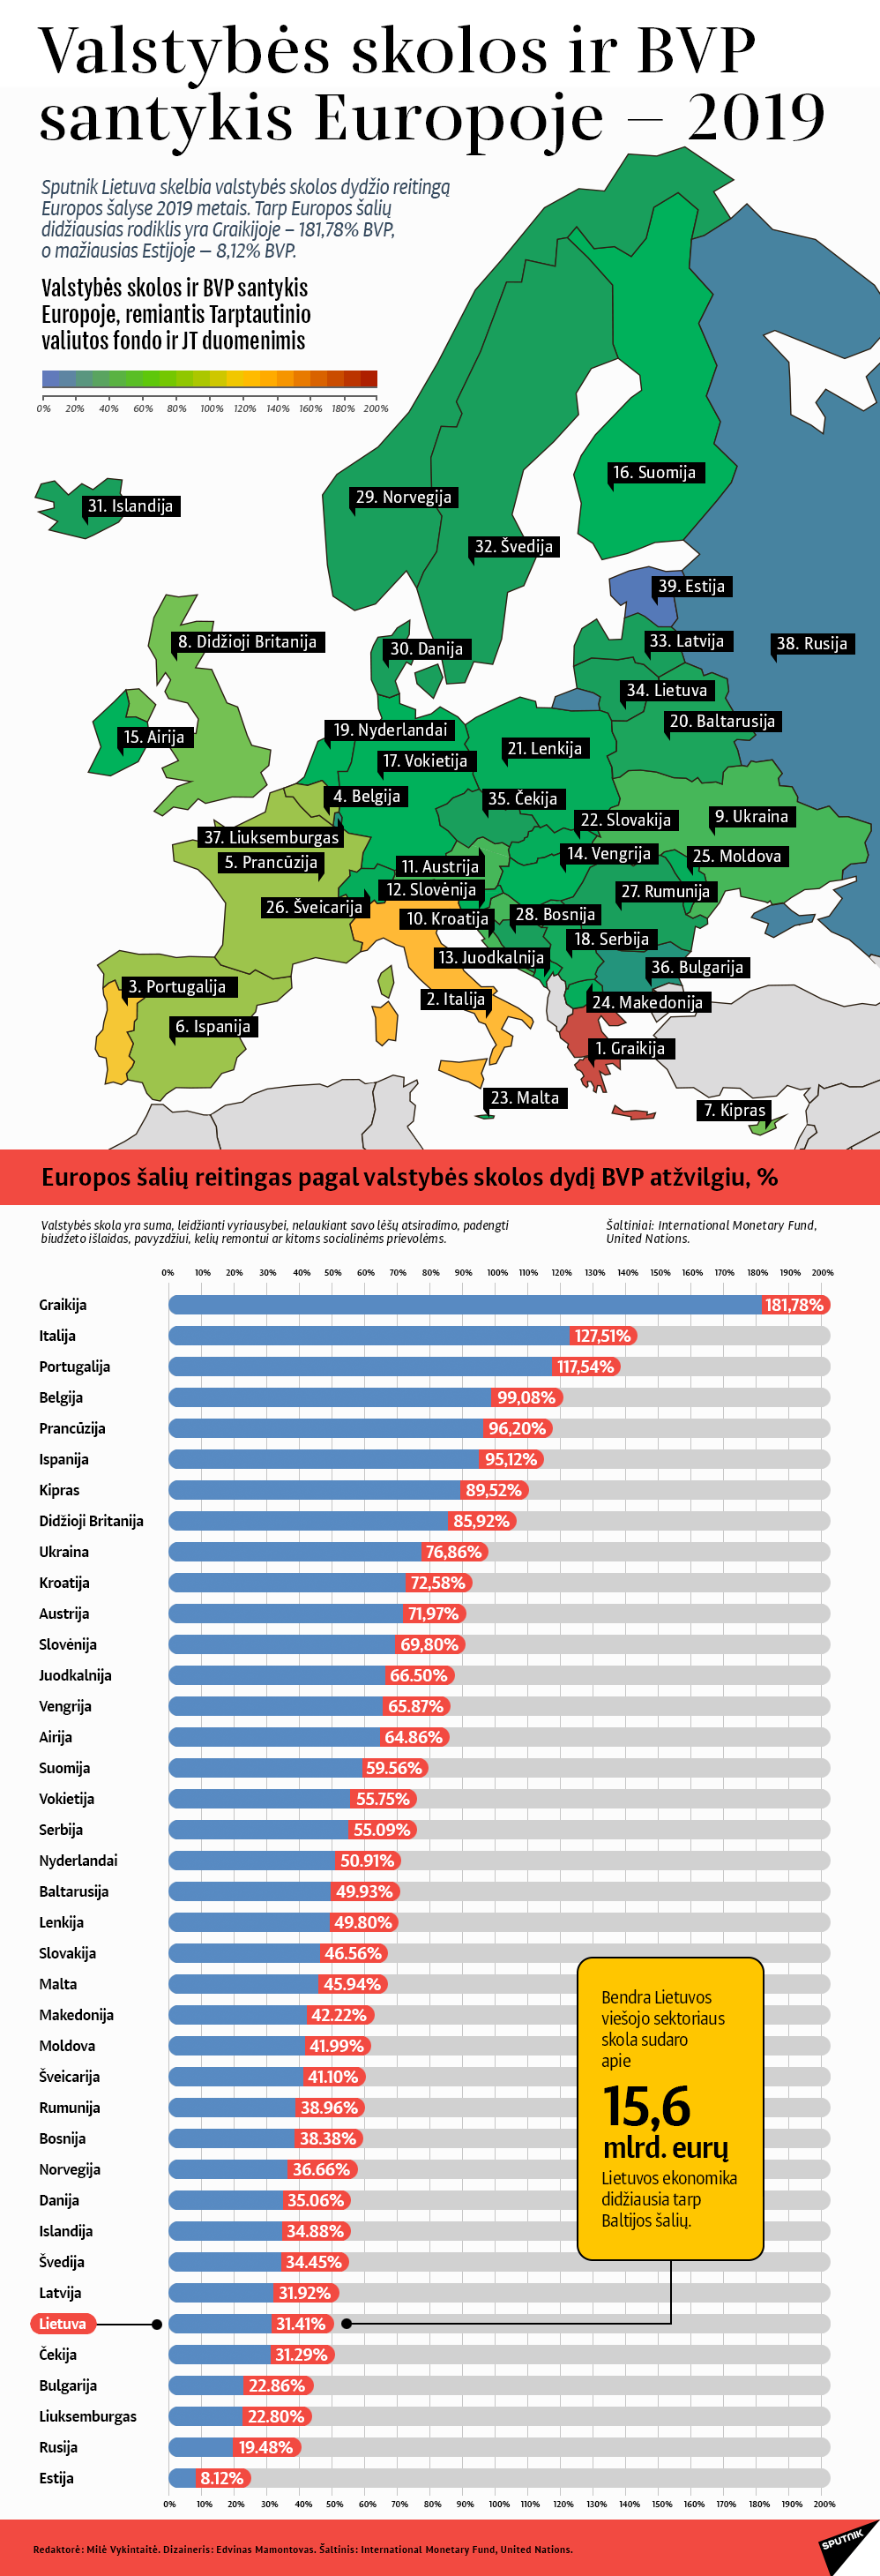 Valstybės skolos ir BVP santykis Europoje — 2019 - Sputnik Lietuva